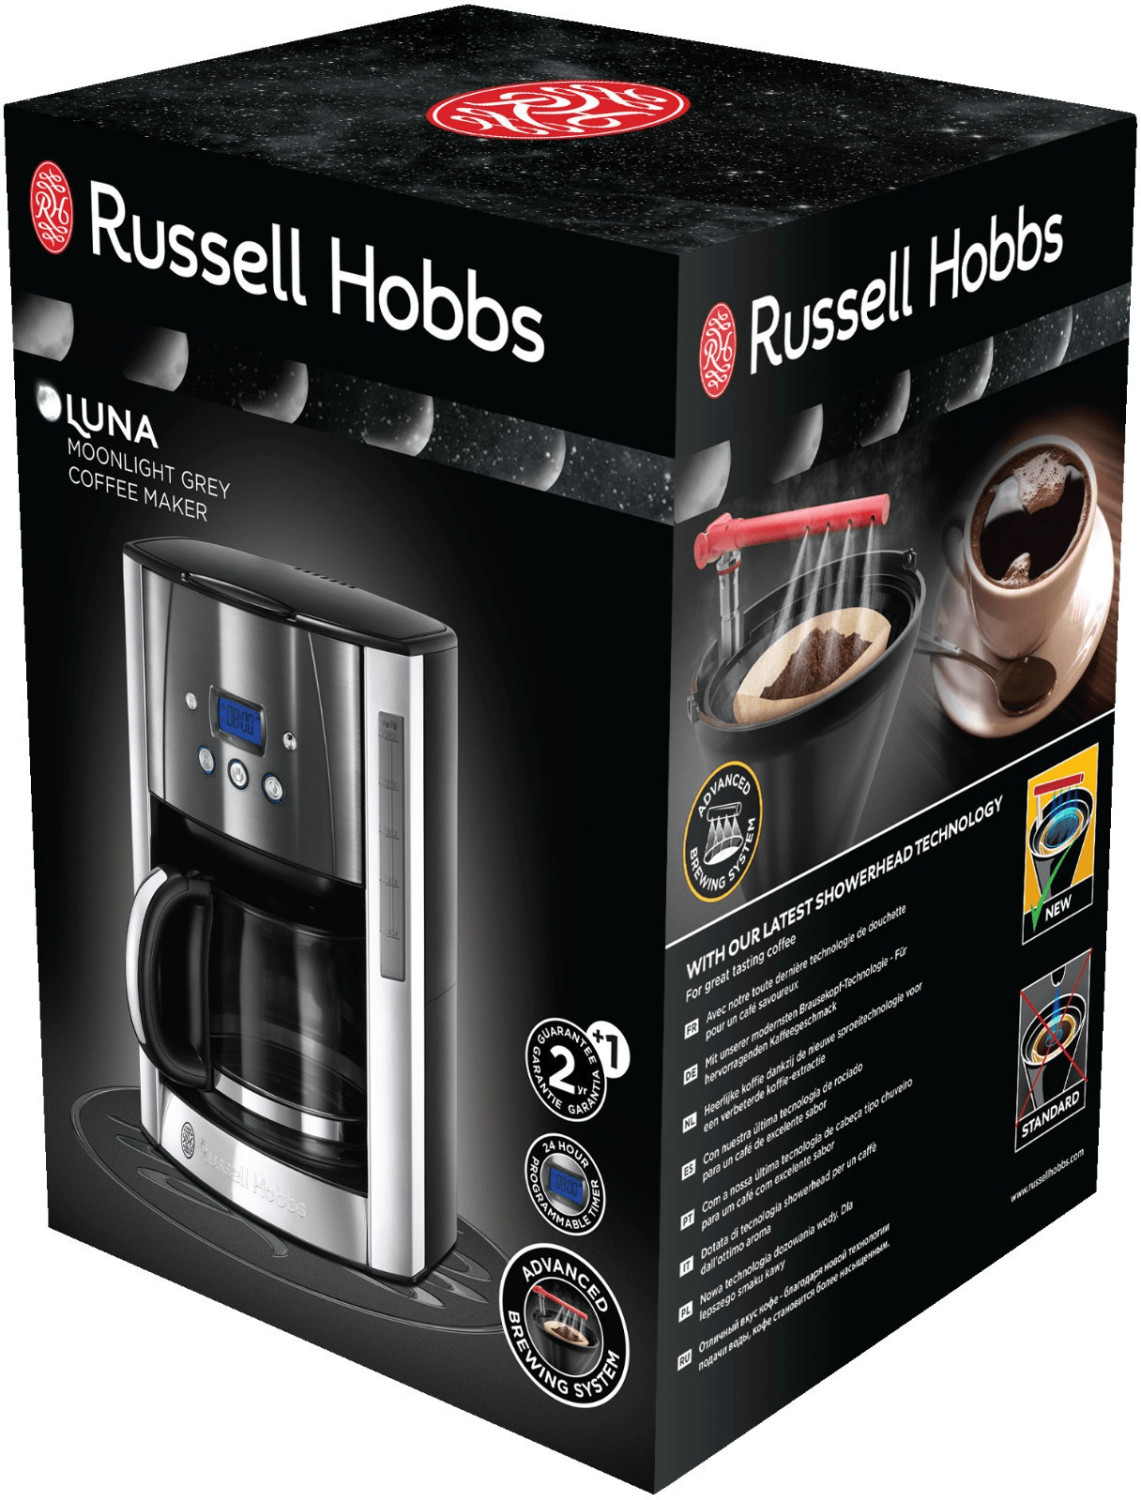 Russell Hobbs Luna Moonlight grey (23241-56) Filterkaffeemaschine